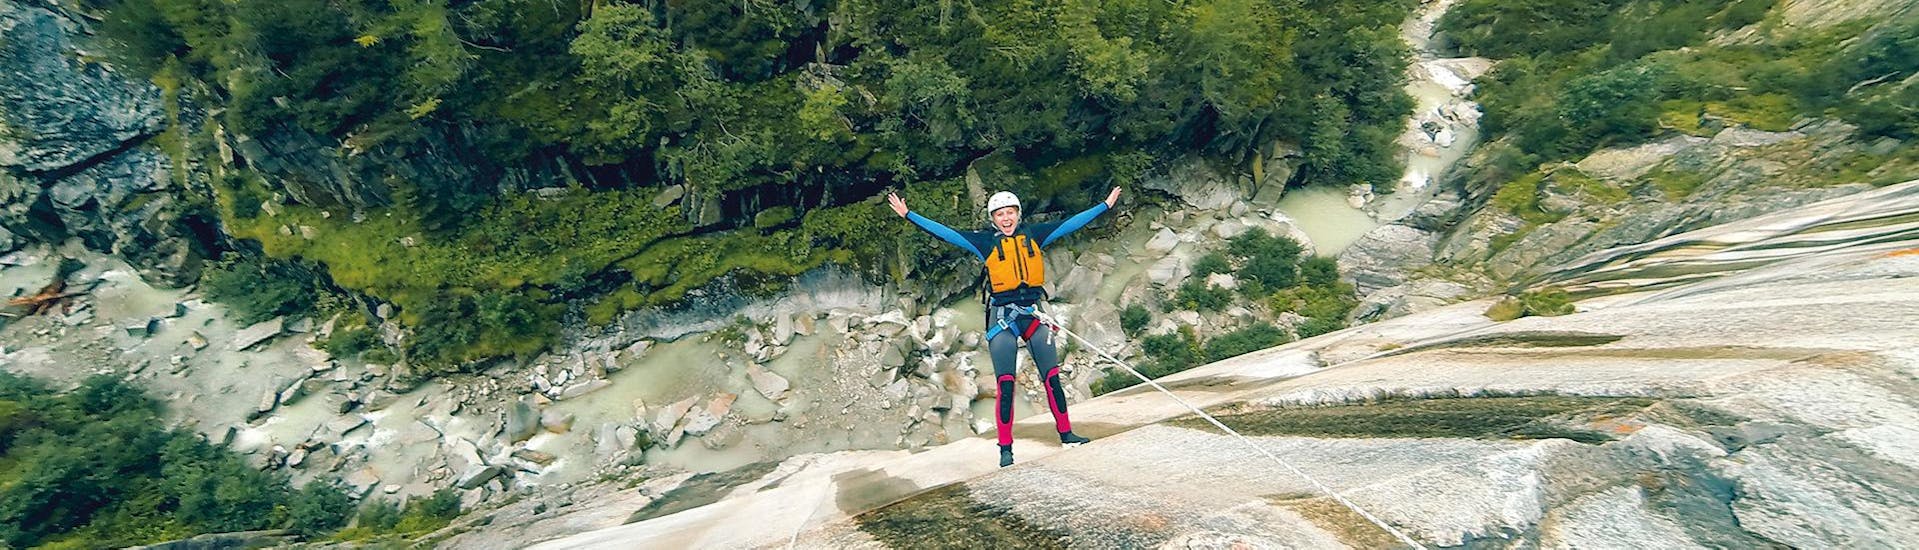 Un homme en train de descendre en rappel pendant le Canyoning dans le canyon de Grimsel pour les Courageux avec Outdoor Switzerland AG.